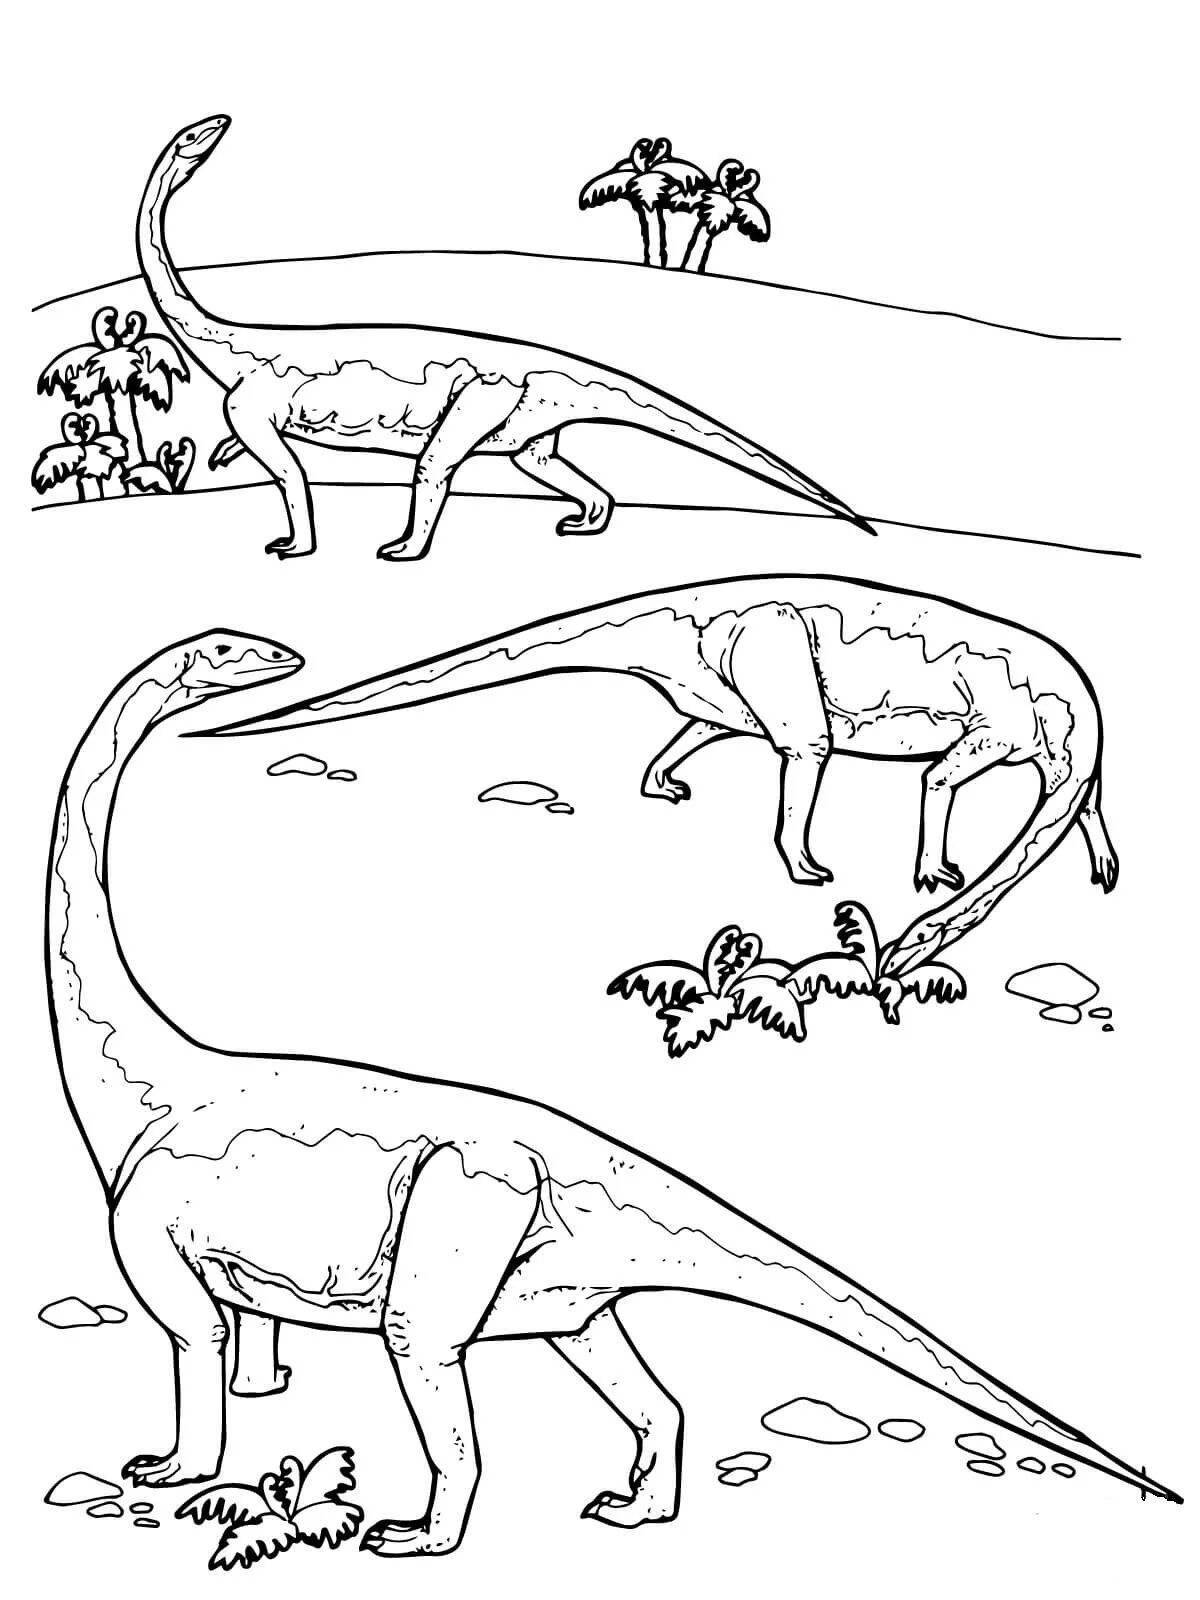 Захватывающая раскраска травоядных динозавров